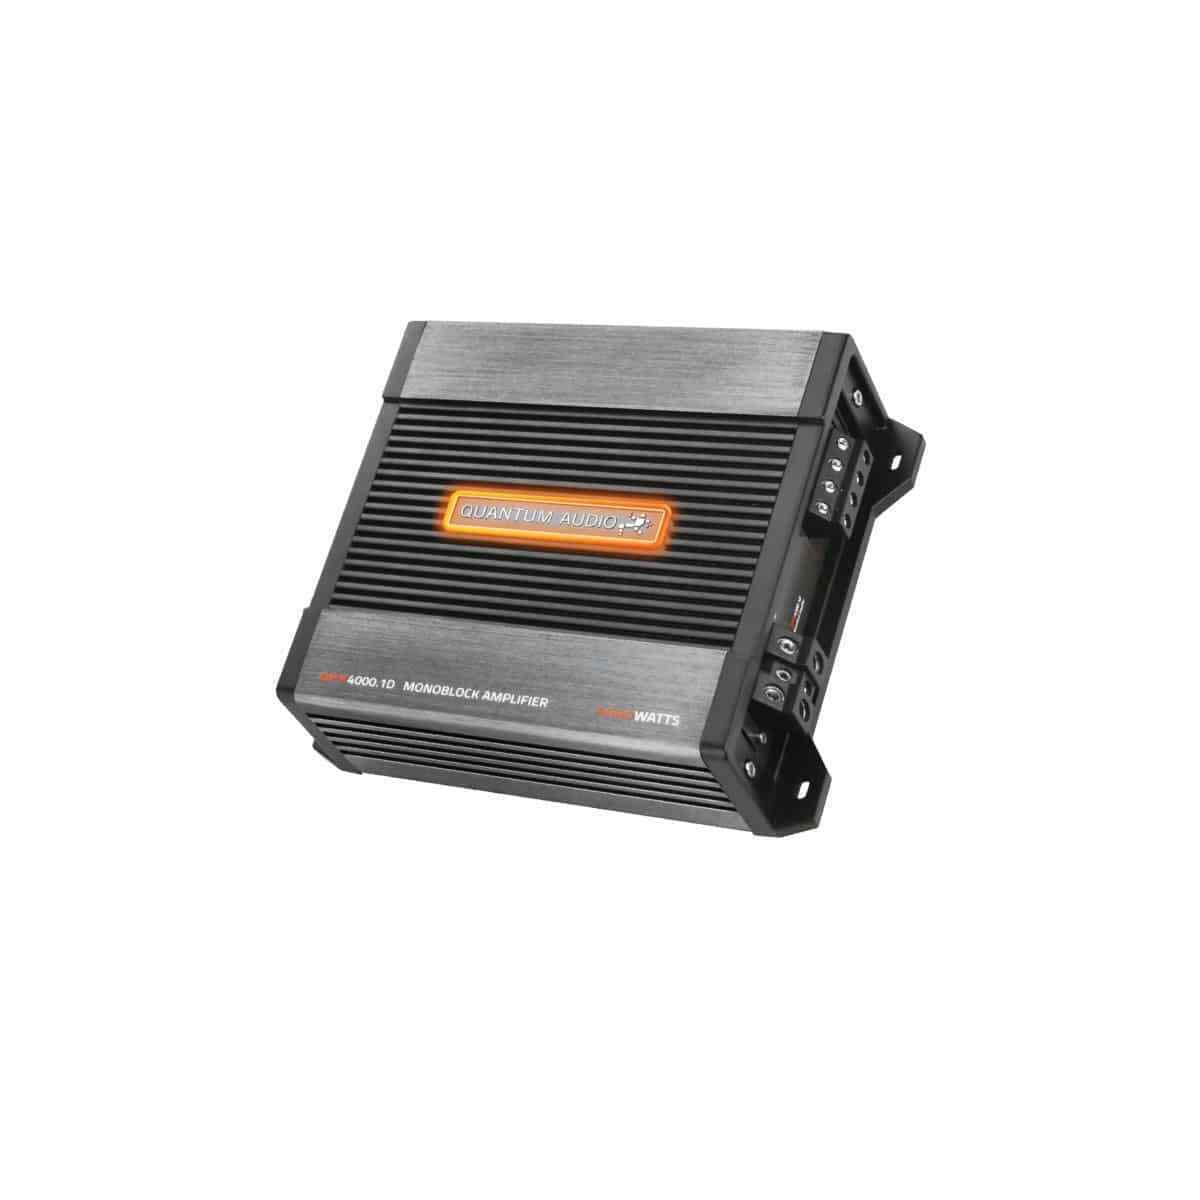 Quantum Audio Monoblock Class D Amplifier QPX40001D Mono Amp for Subwoofer 4000W Max 1-Ohm Stable